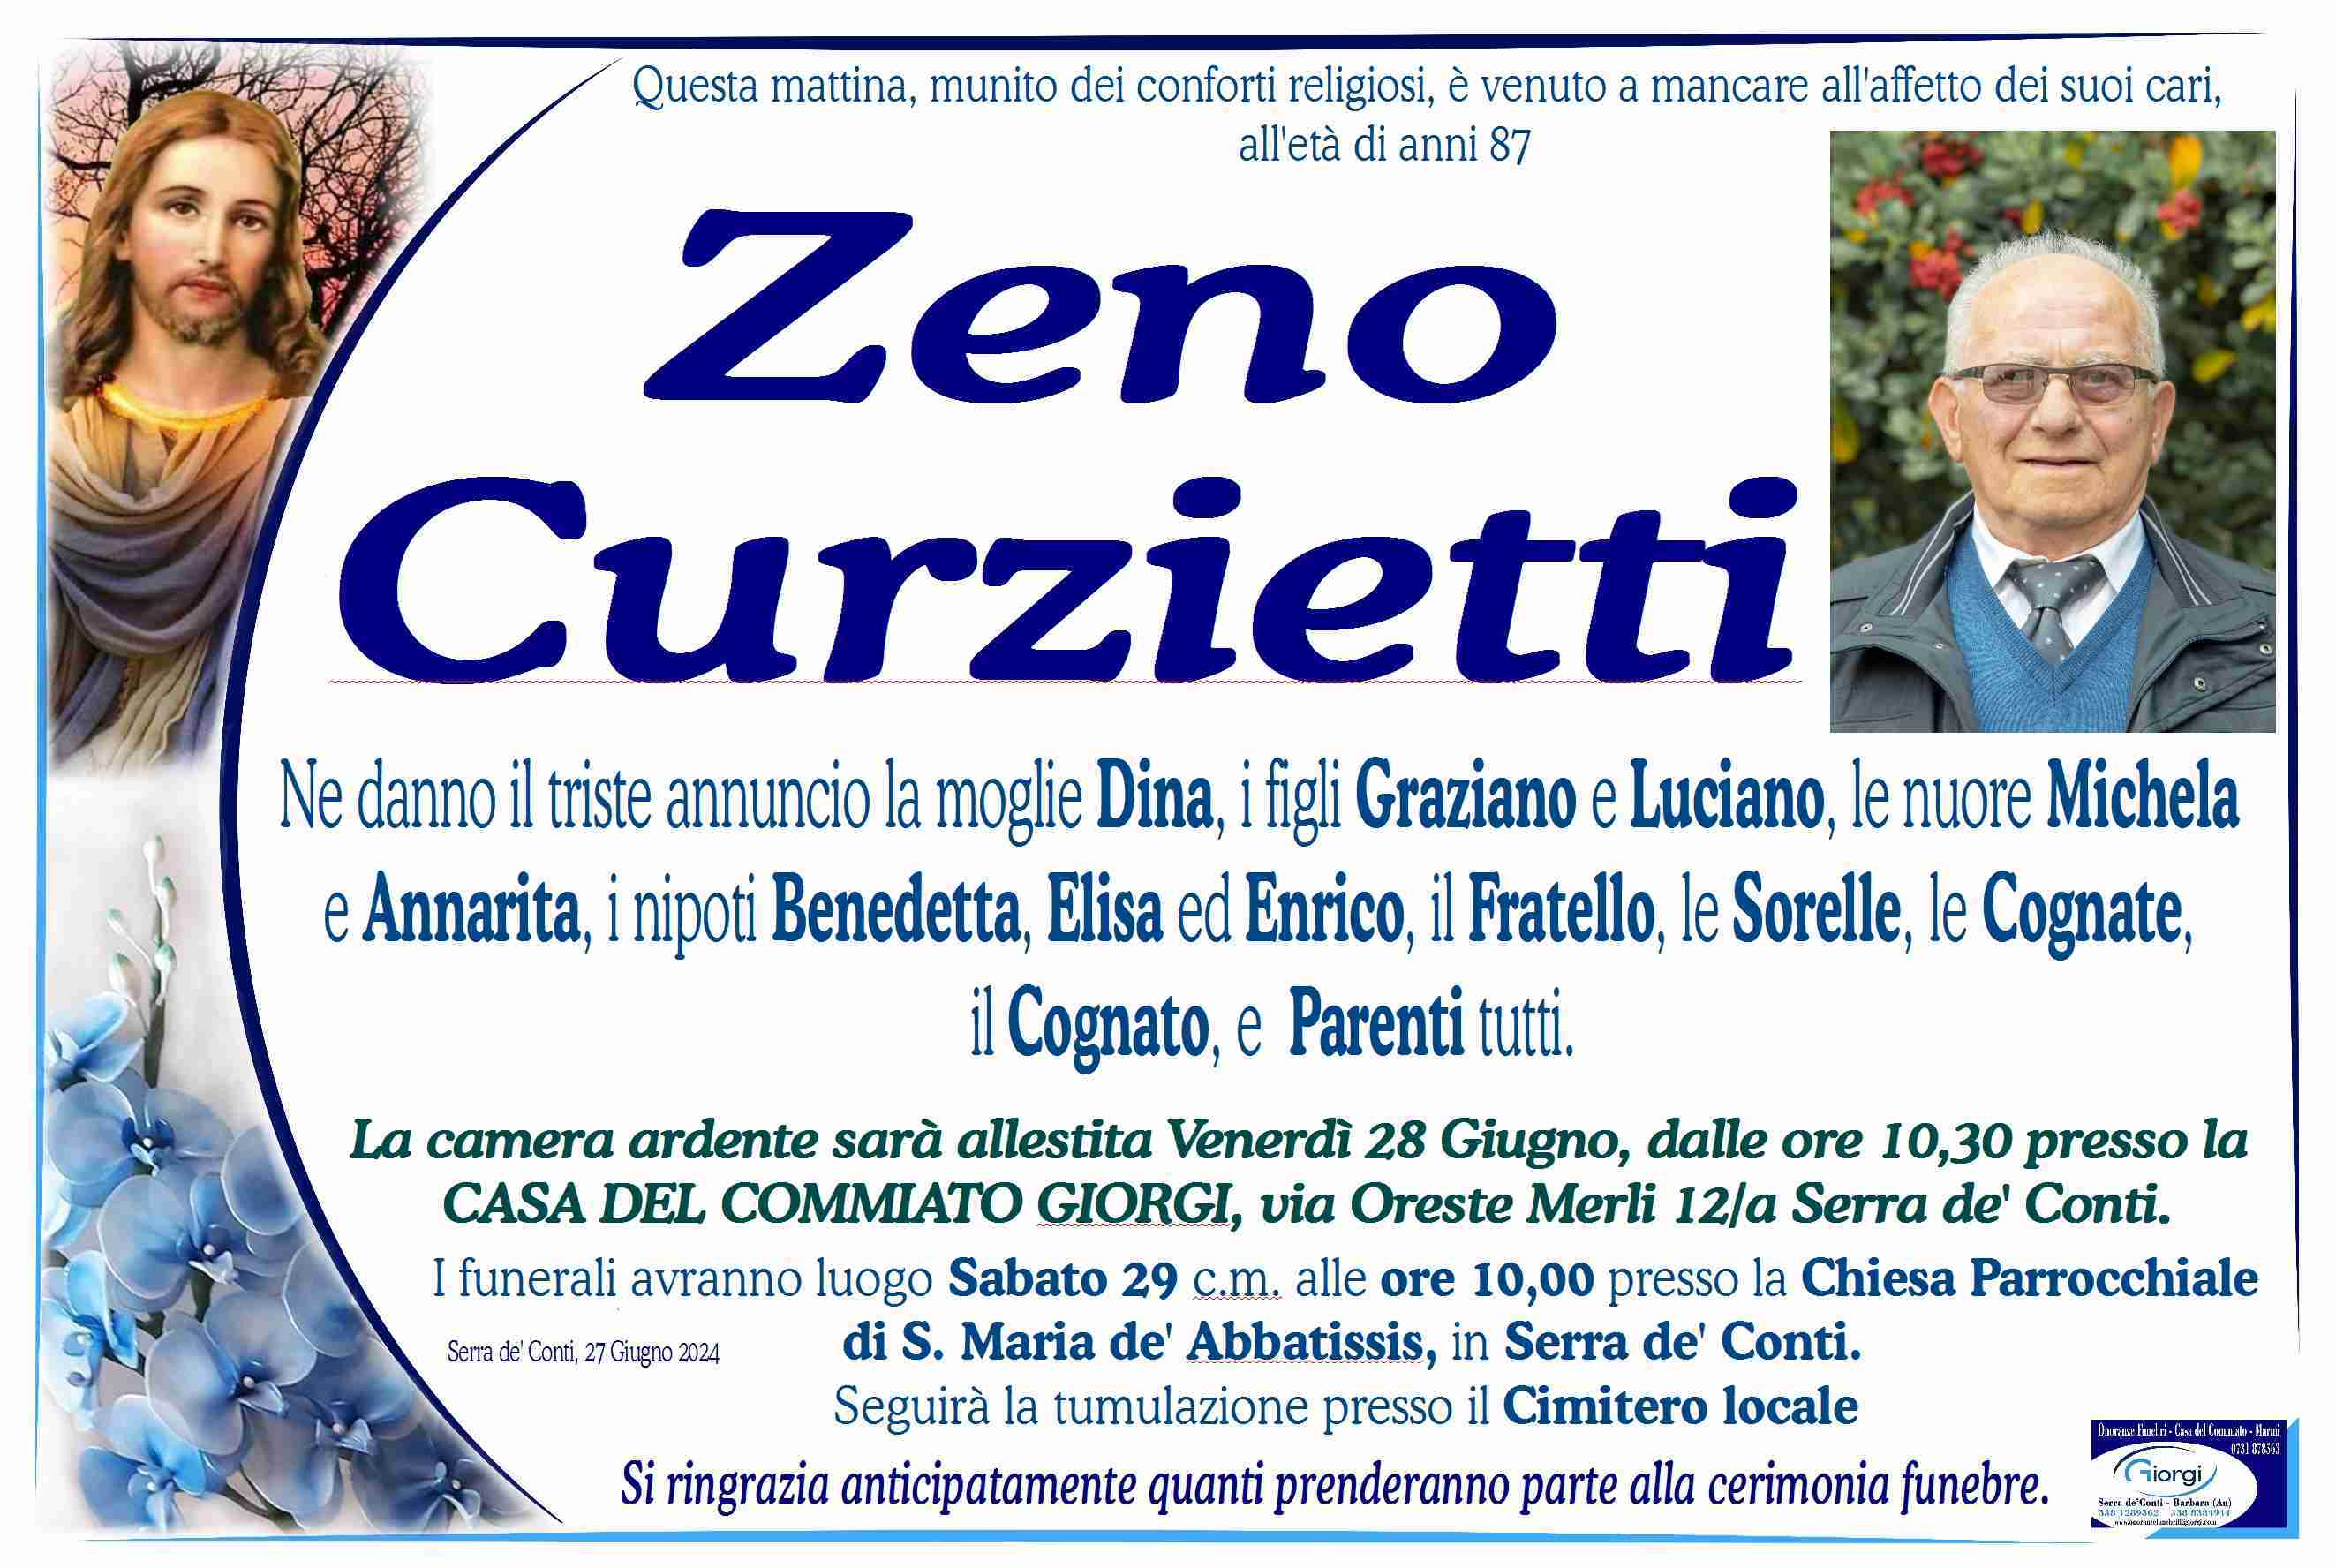 Zeno Curzietti